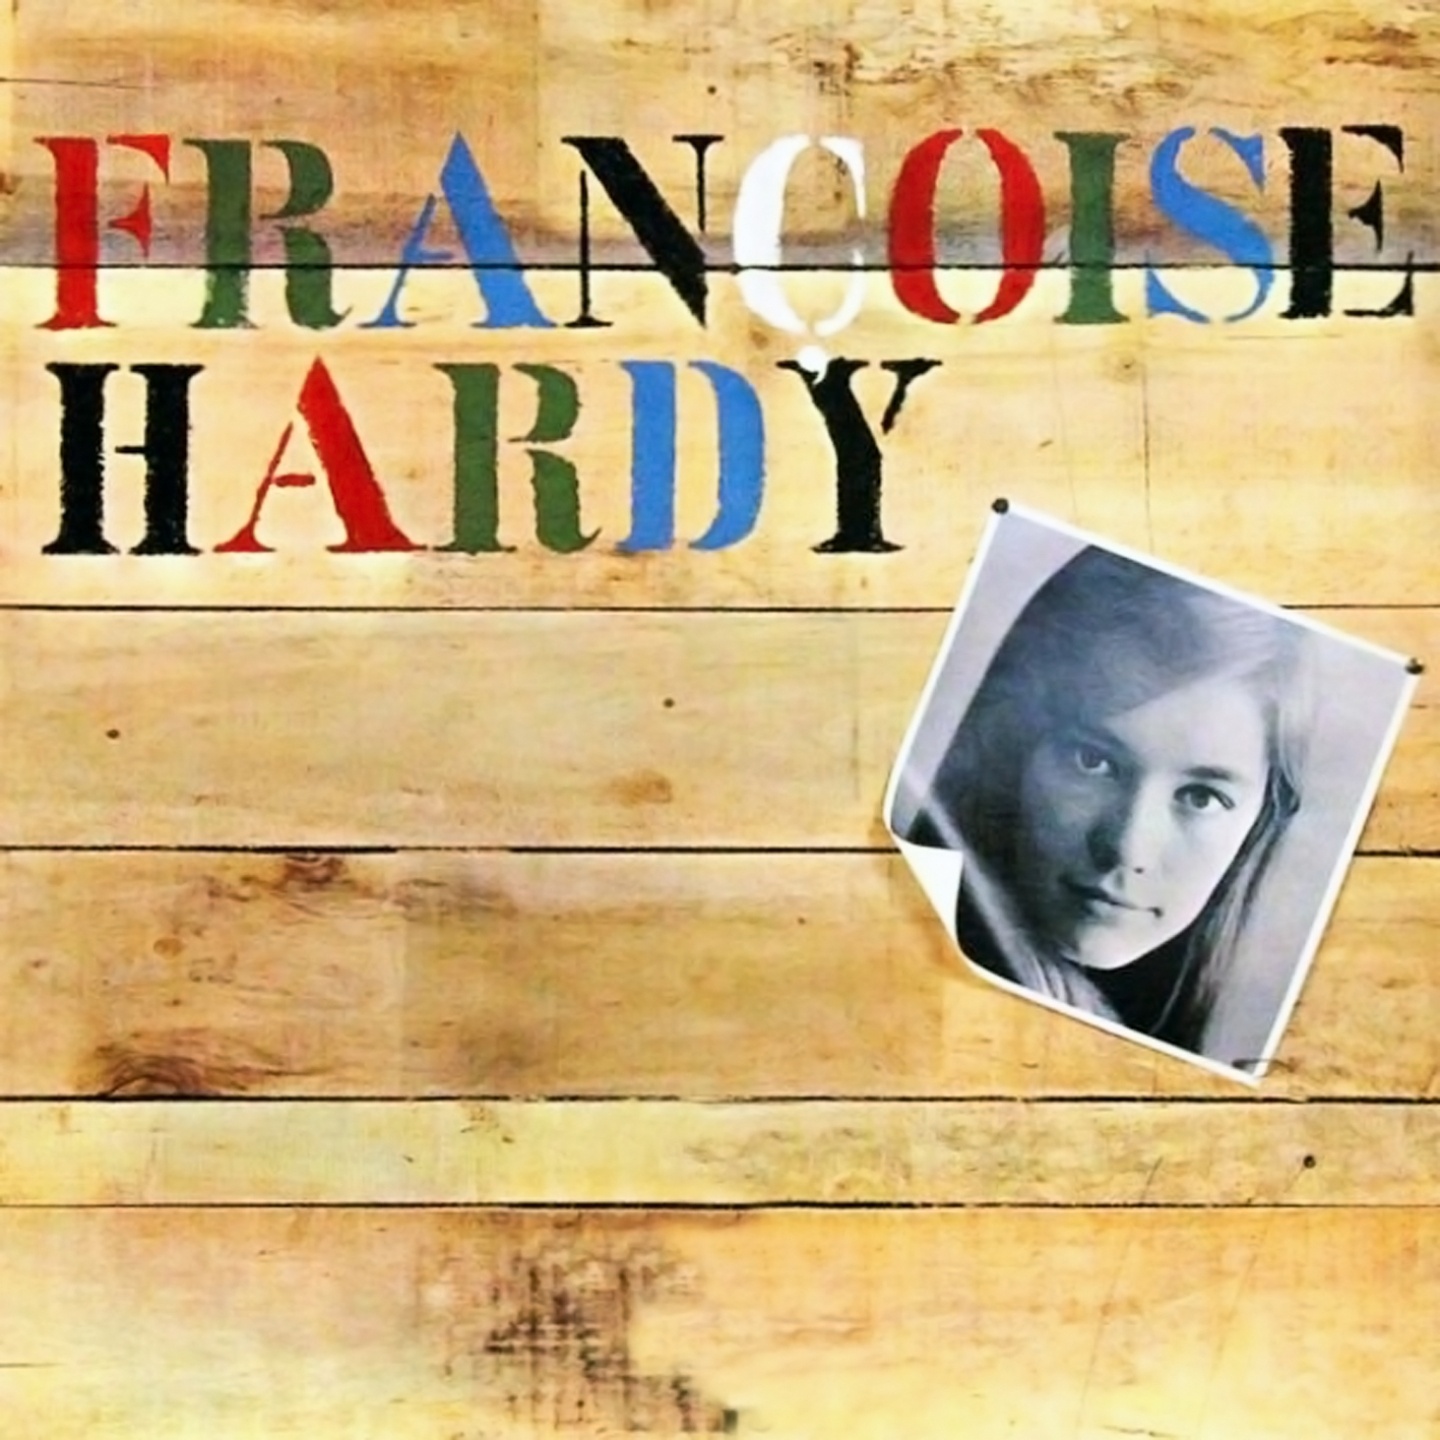 Fran oise Hardy